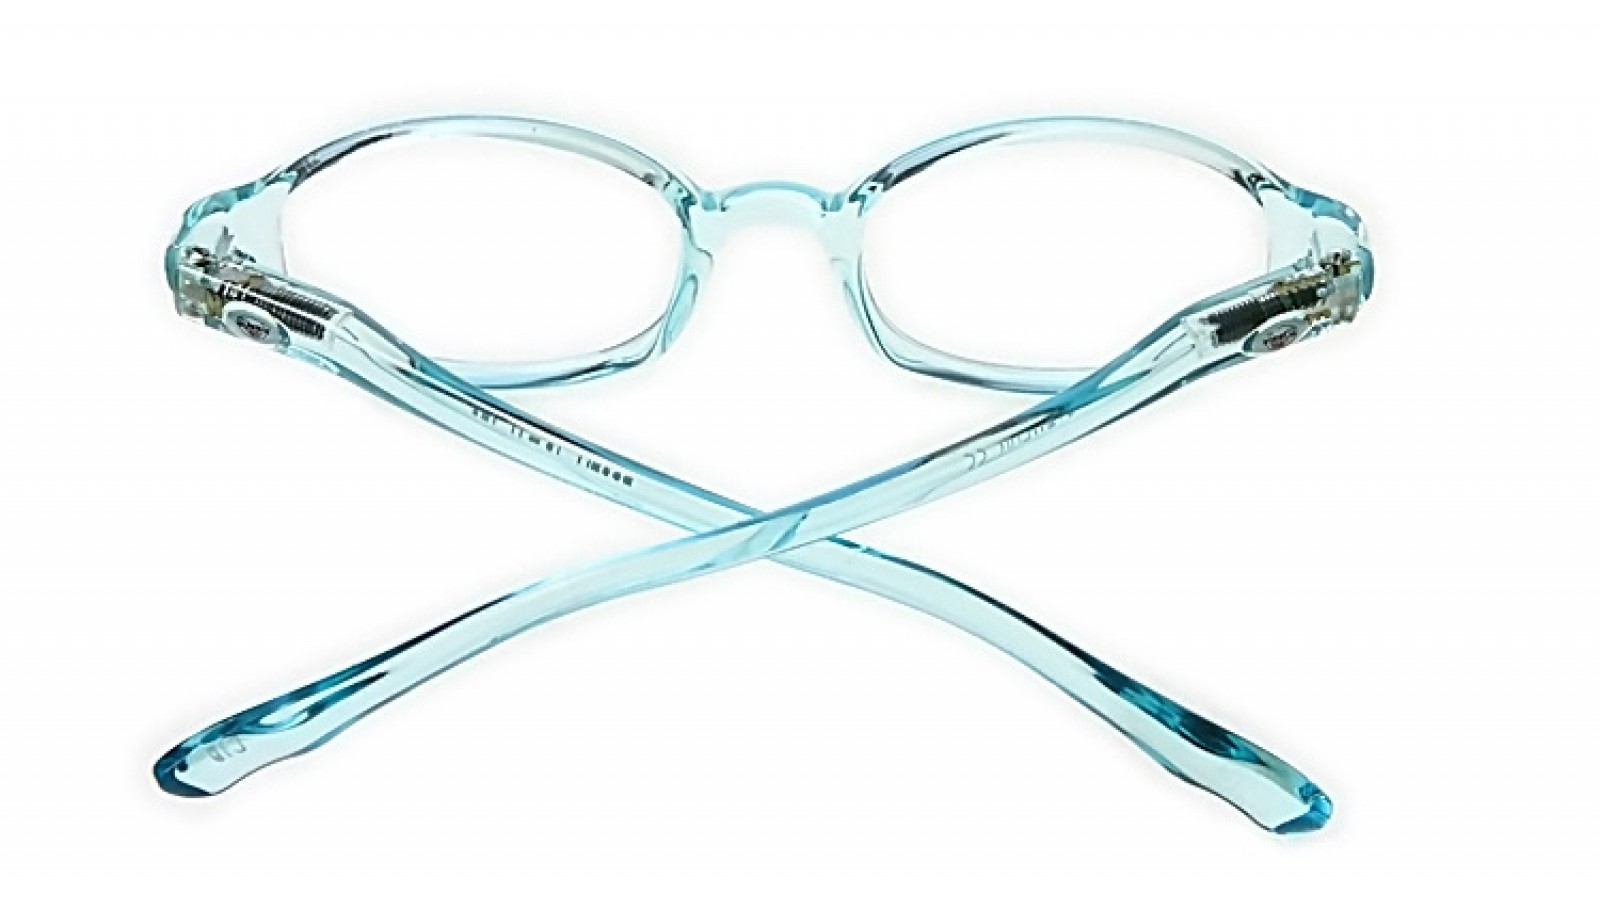 1 ÜCK Blau Schutzbrille Brille Transparente Brille Für Kinder Spiel 4H 